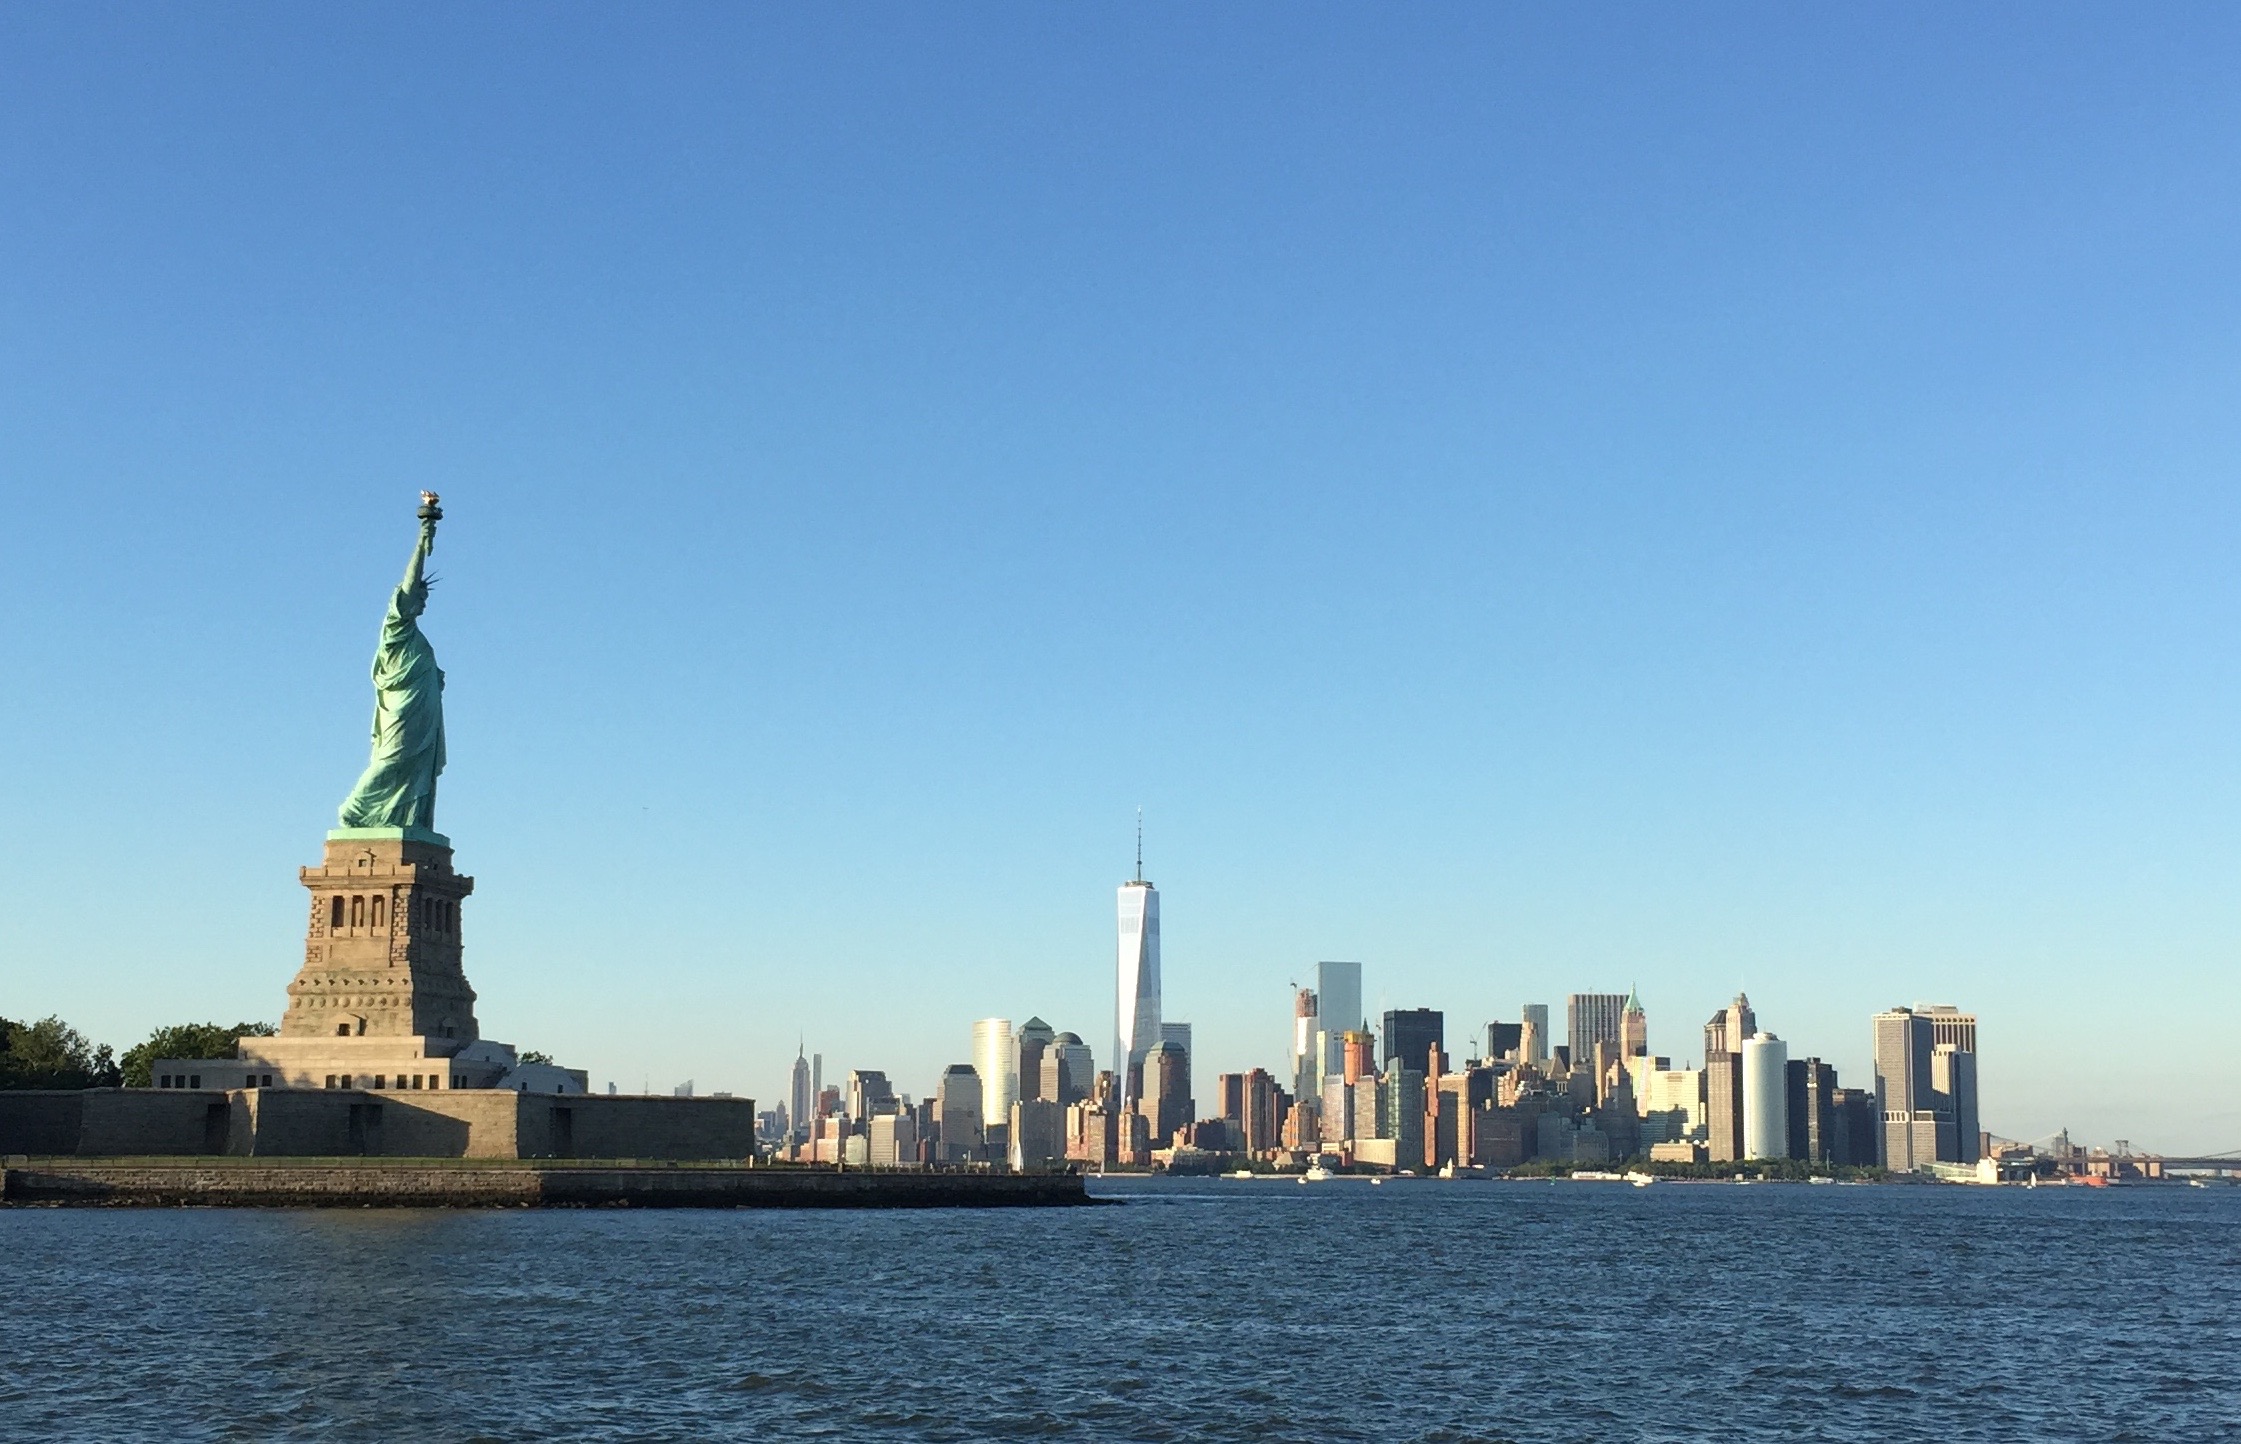 Top 5 Statue of Liberty Instagram spots